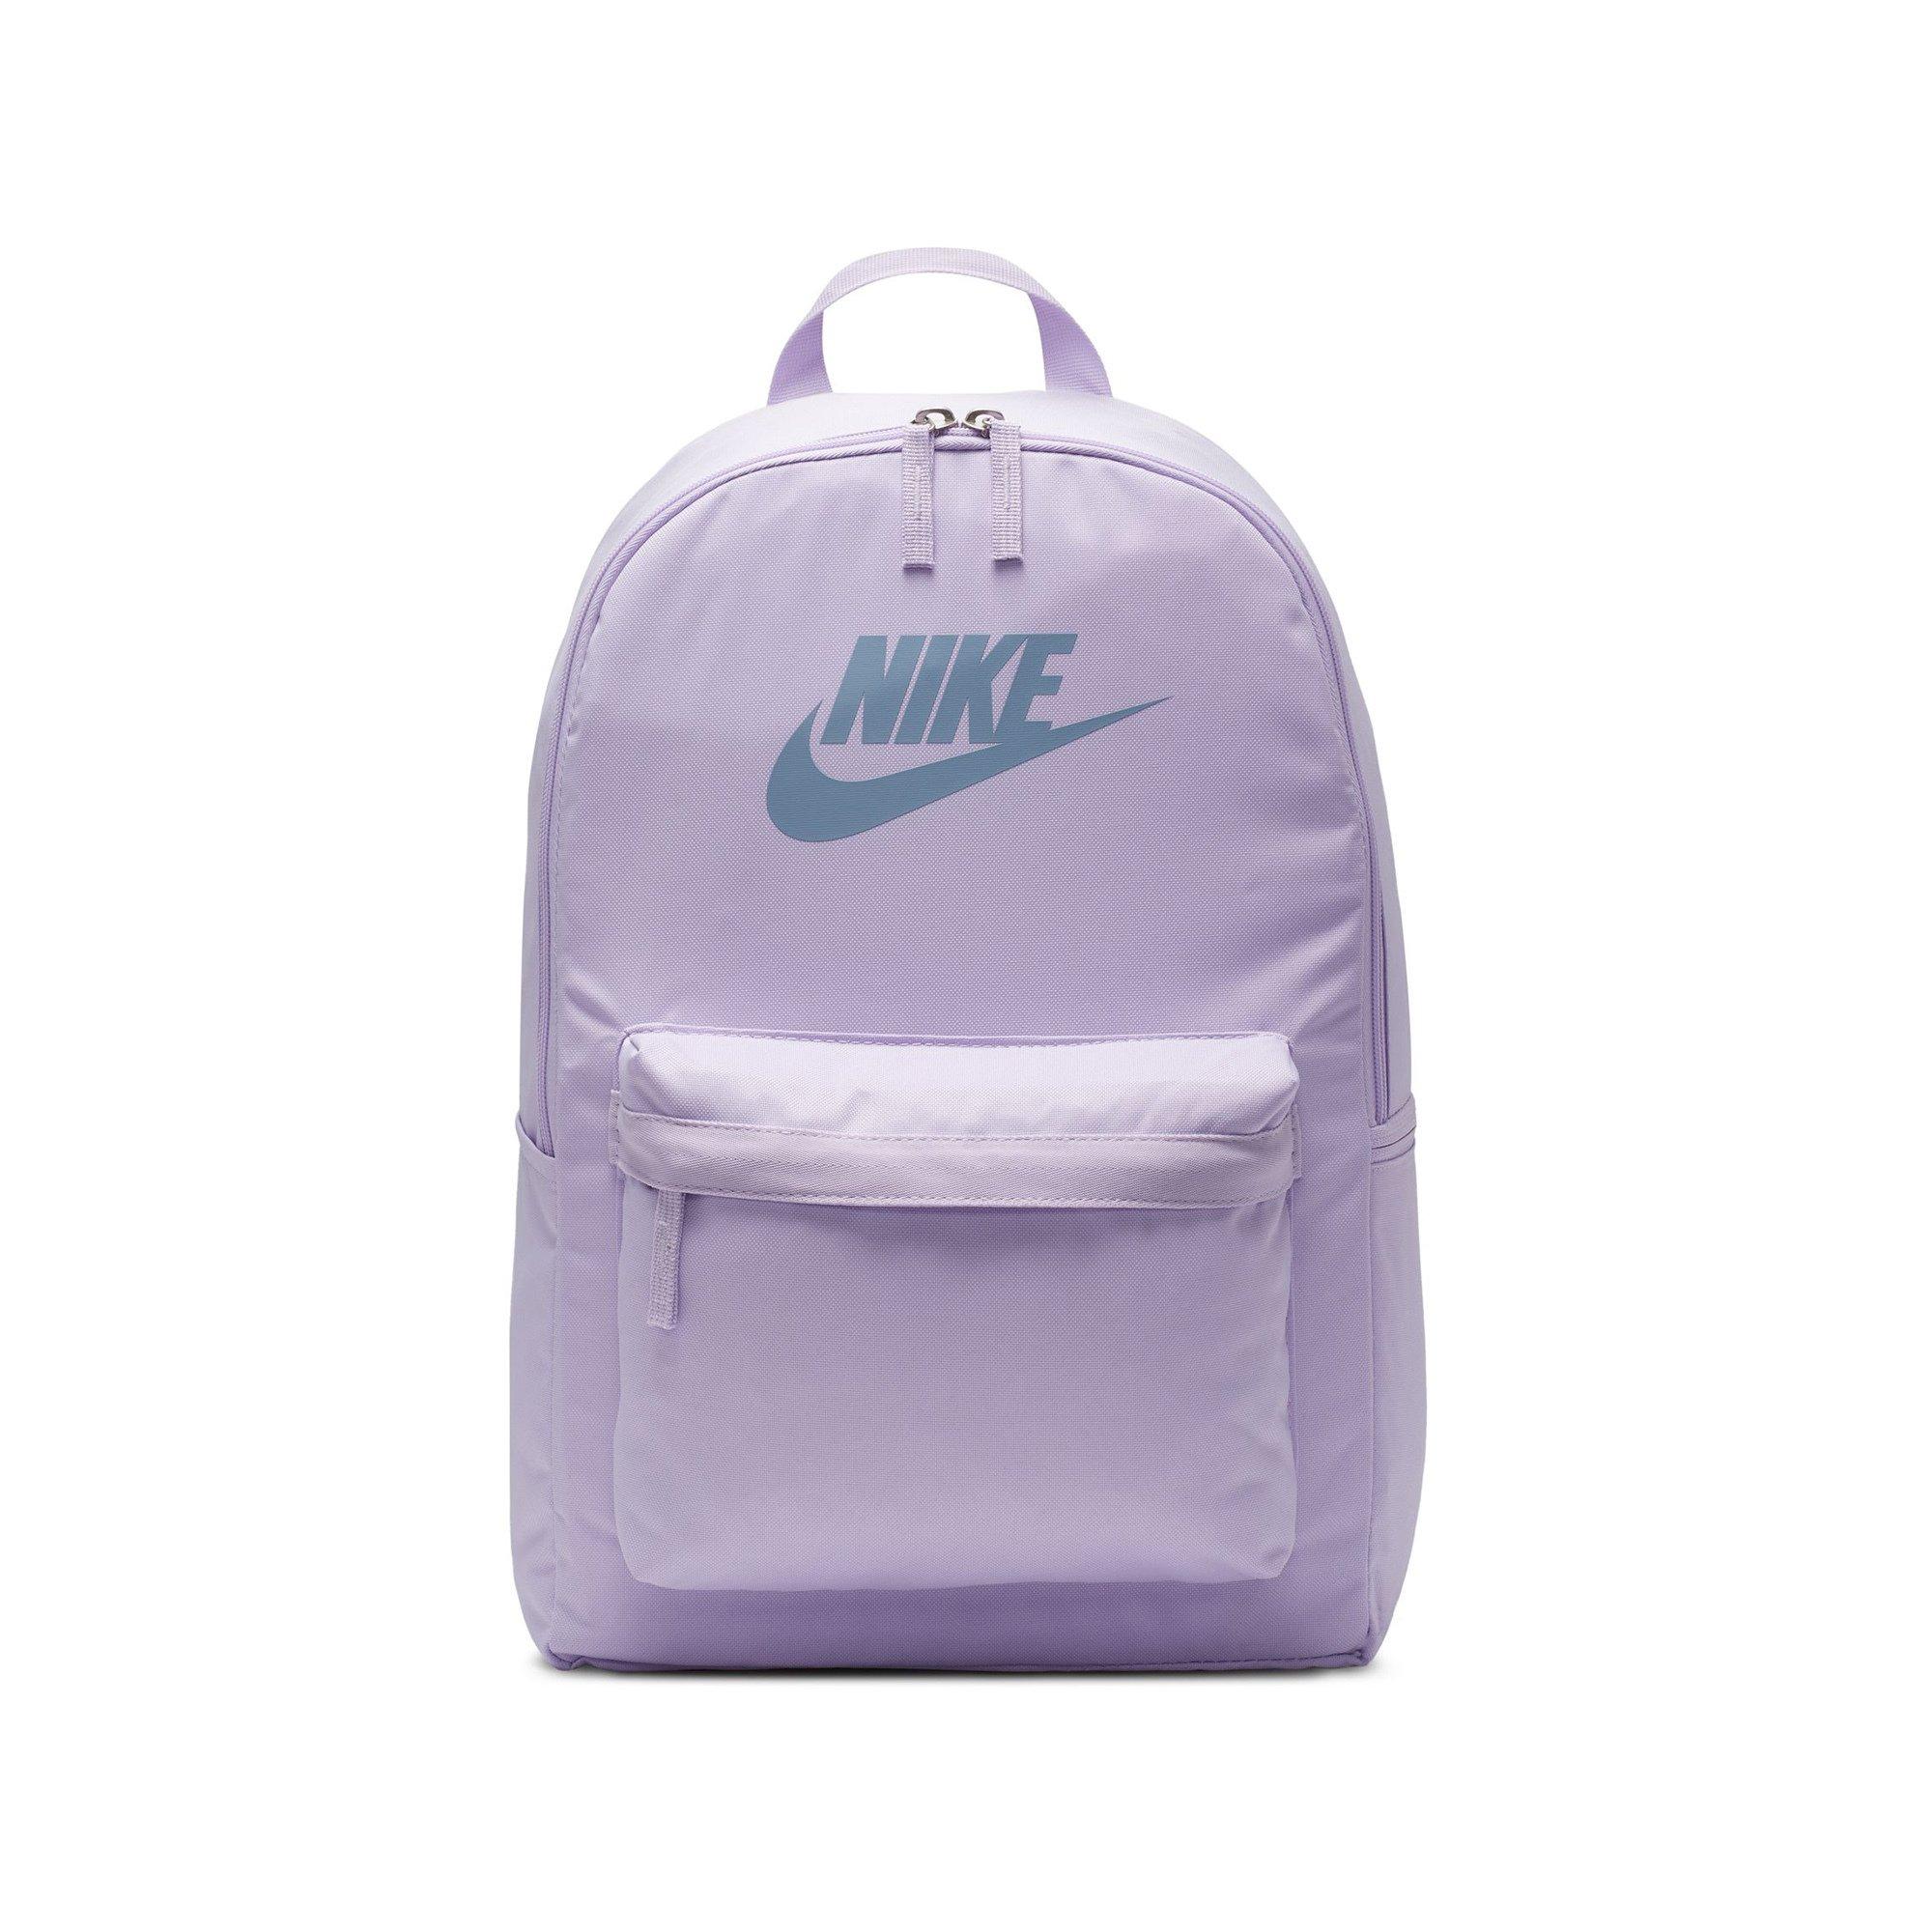 NIKE Rucksack Nike Heritage Backpack 